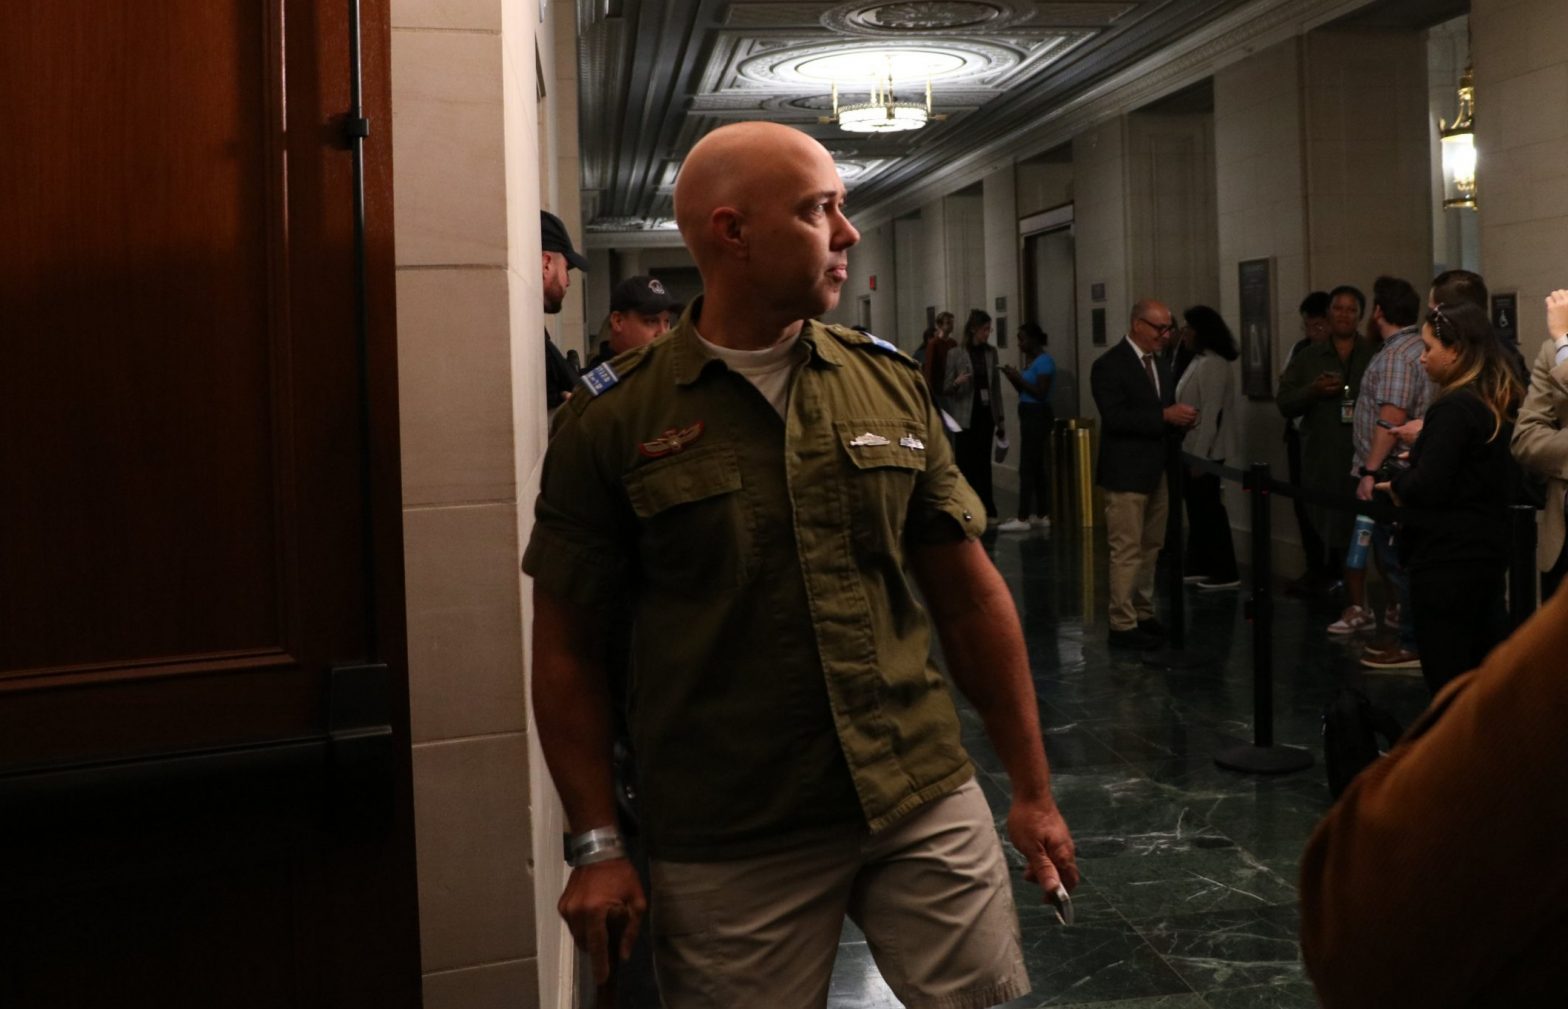 Rep. Brian Mast wears Israeli military uniform to Capitol Hill replying to Rashida Tlaib’s Palestinian flag | Watch